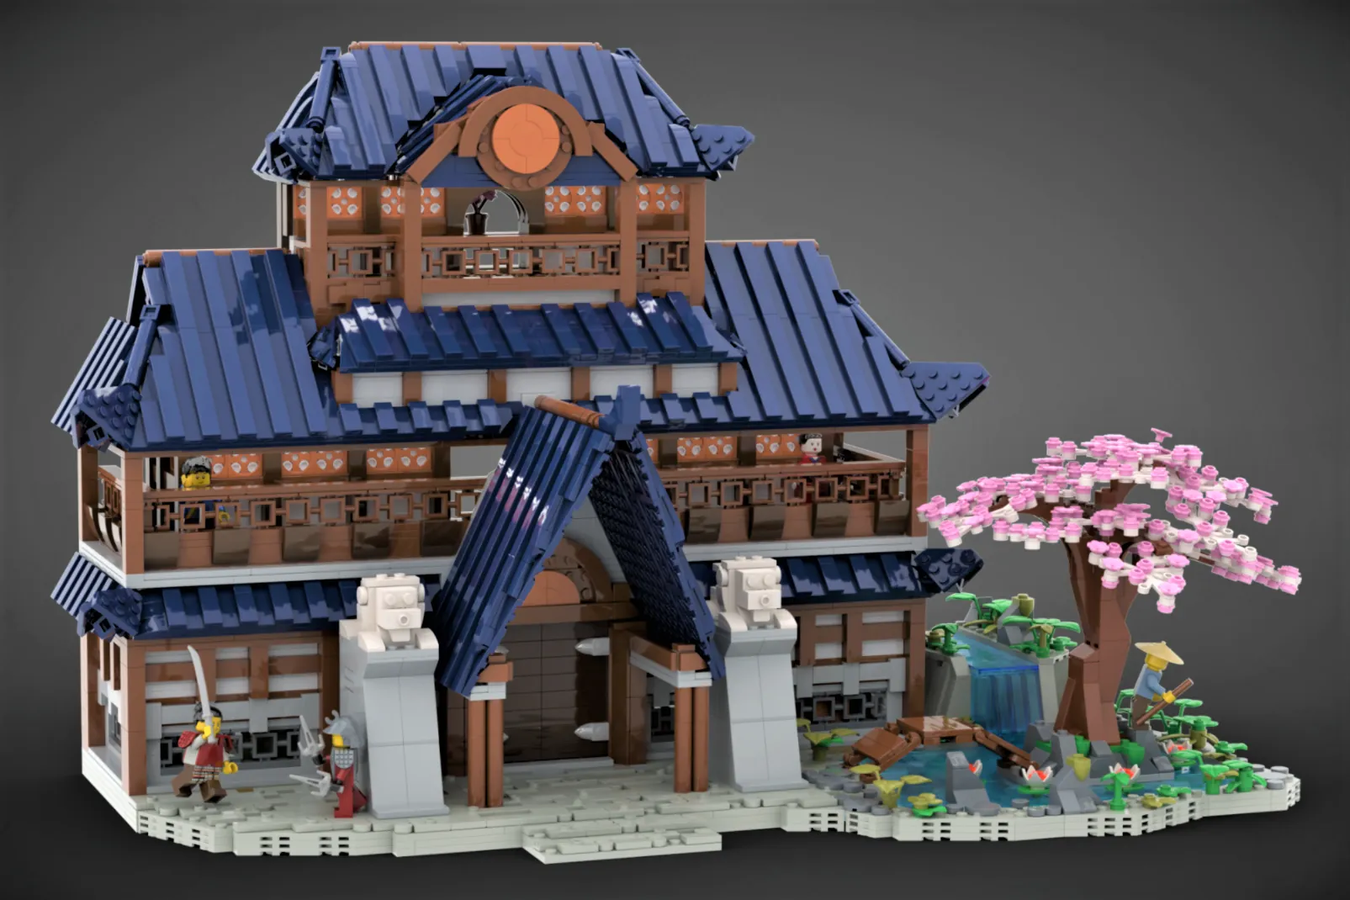 Le château japonais gagne 10,000 XNUMX supporters sur LEGO Ideas